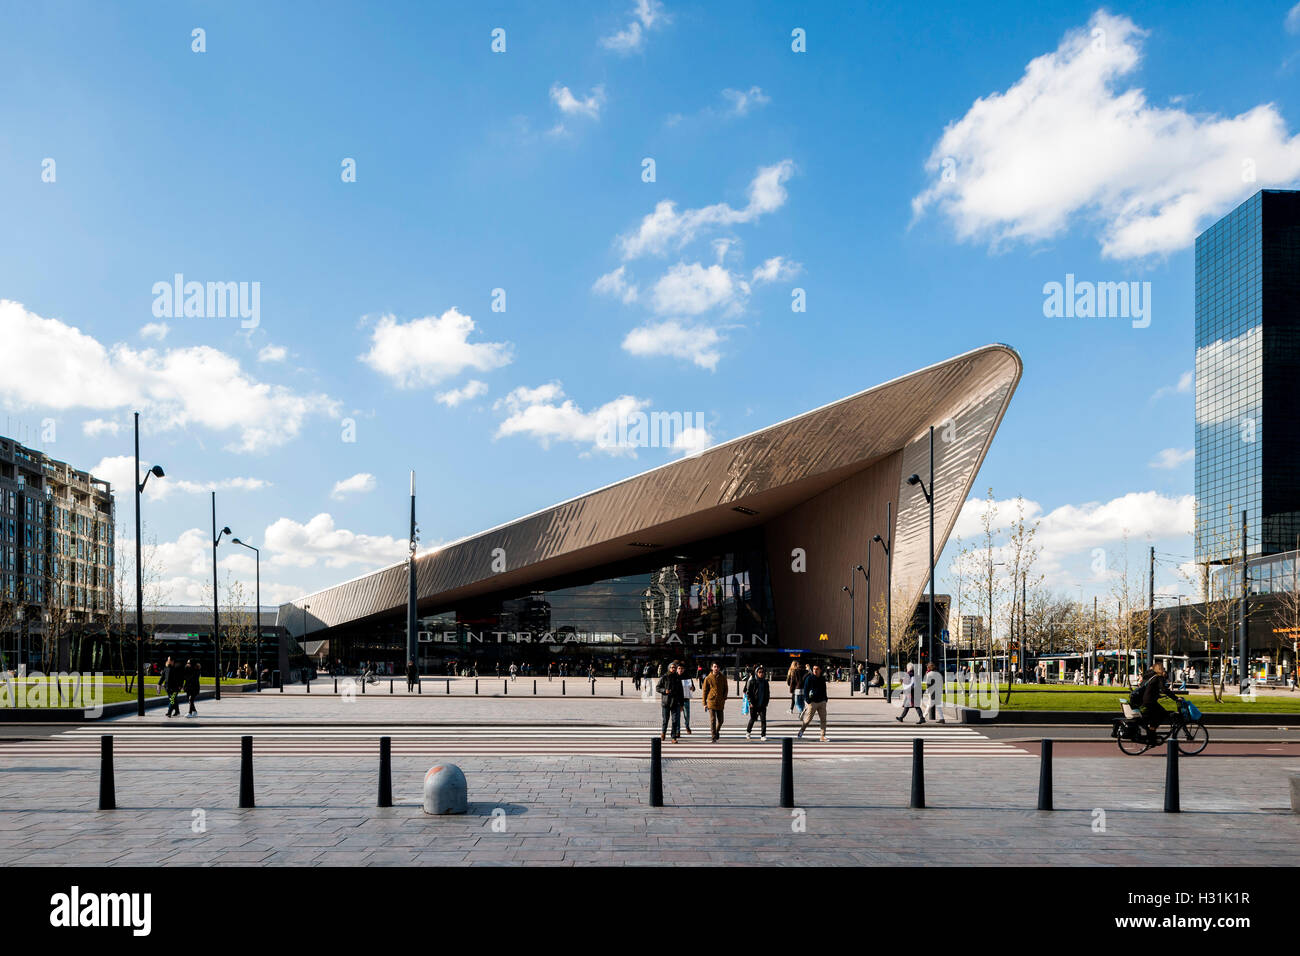 Distanza centrale vista della piazza pubblica e angolari in metallo rivestito con tettoia pedoni. Centraal Station, Rotterdam, Paesi Bassi. Foto Stock